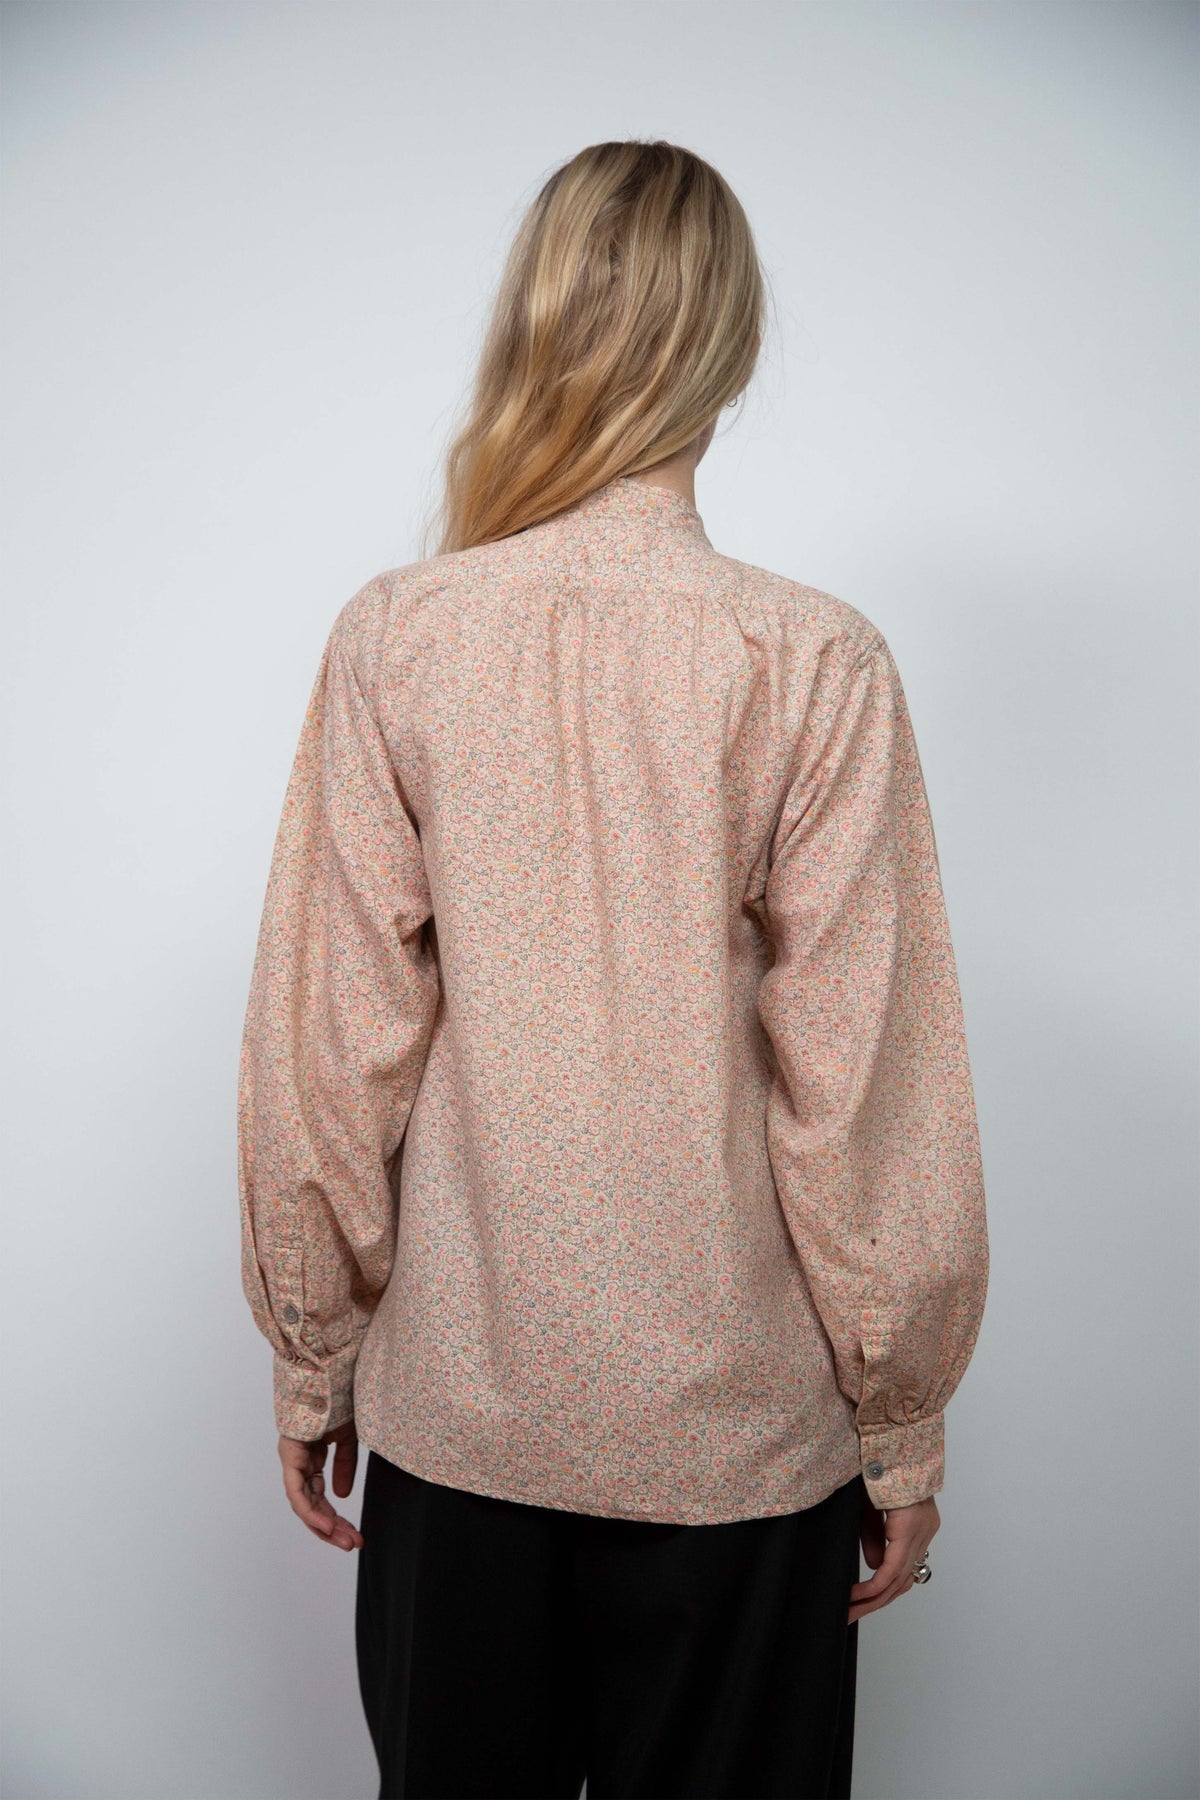 Yves Saint Laurent floral shirt